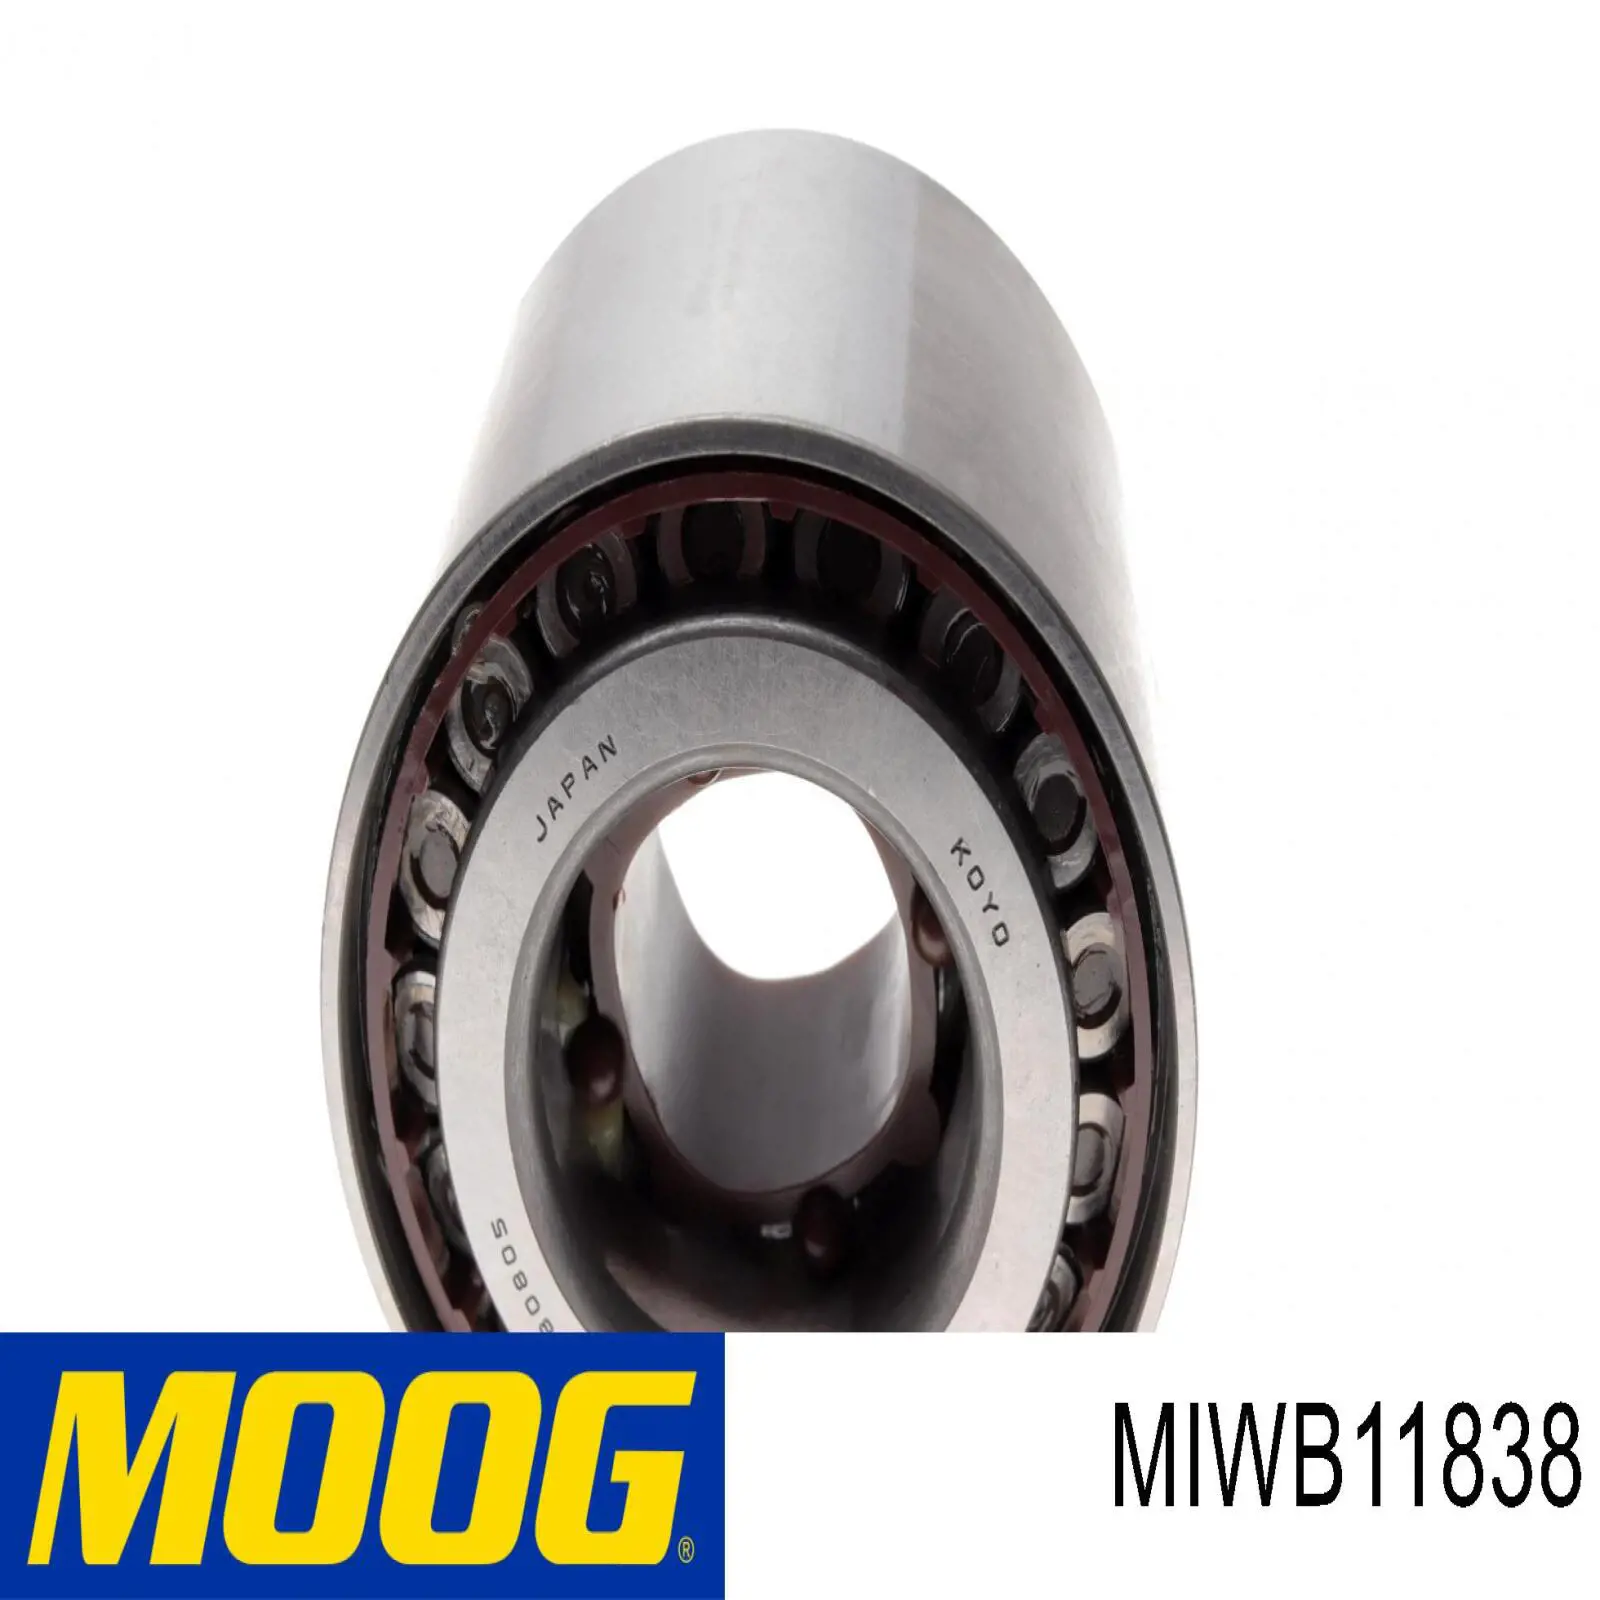 MIWB11838 Moog cojinete de rueda trasero